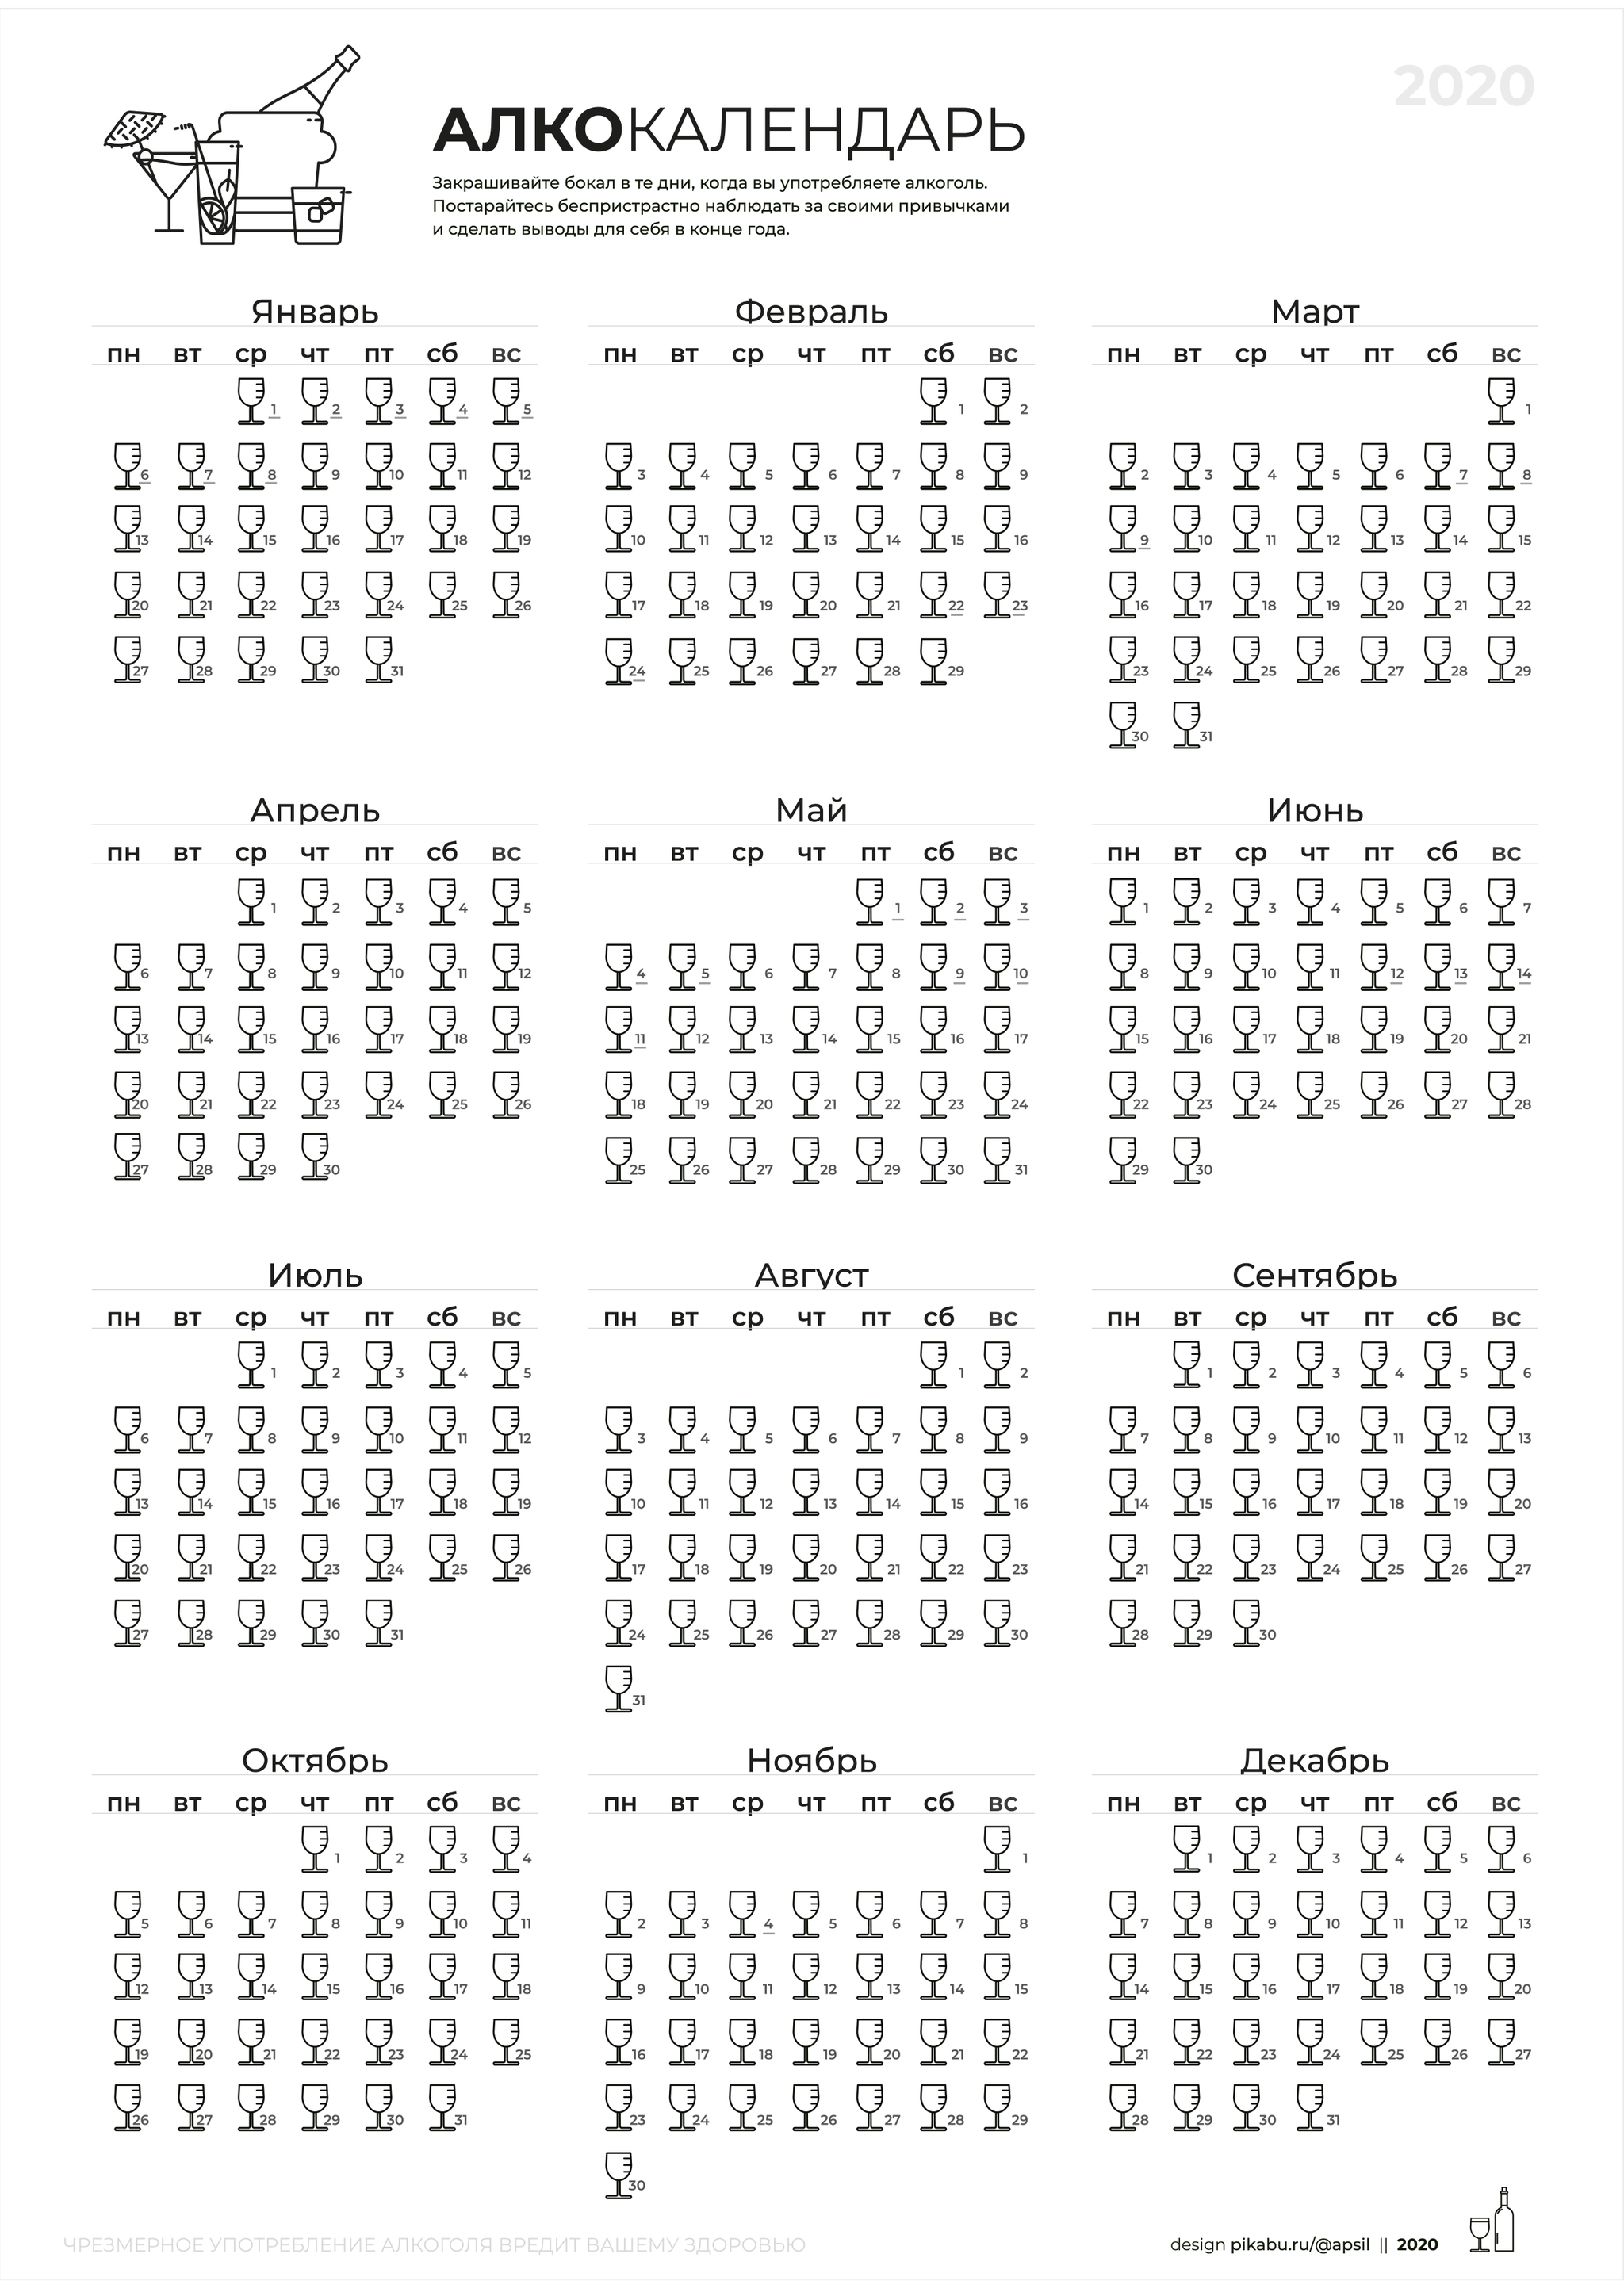 Алко Календарь 2020 pertaining to Kuda Calendar 2020